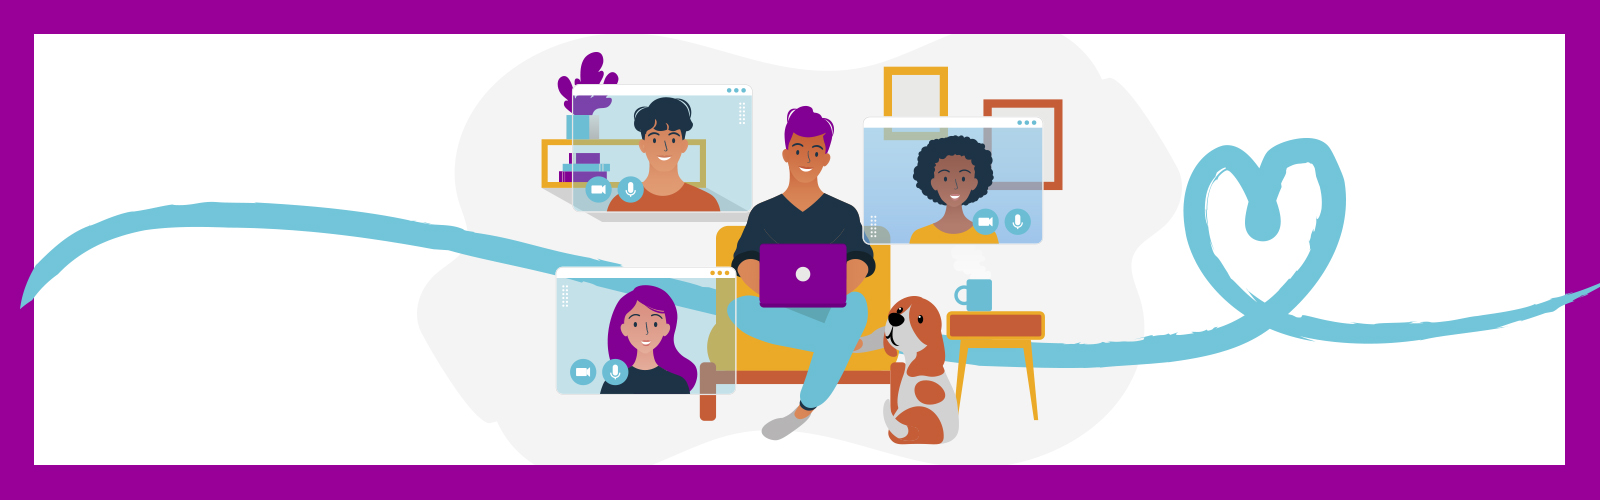 A imagem é uma animação colorida com o desenho de um rapaz sentado ao centro e atrás dele três telas com o rosto de outras pessoas simulando uma videoconferência. Há um cachorro sentado ao lado dele.